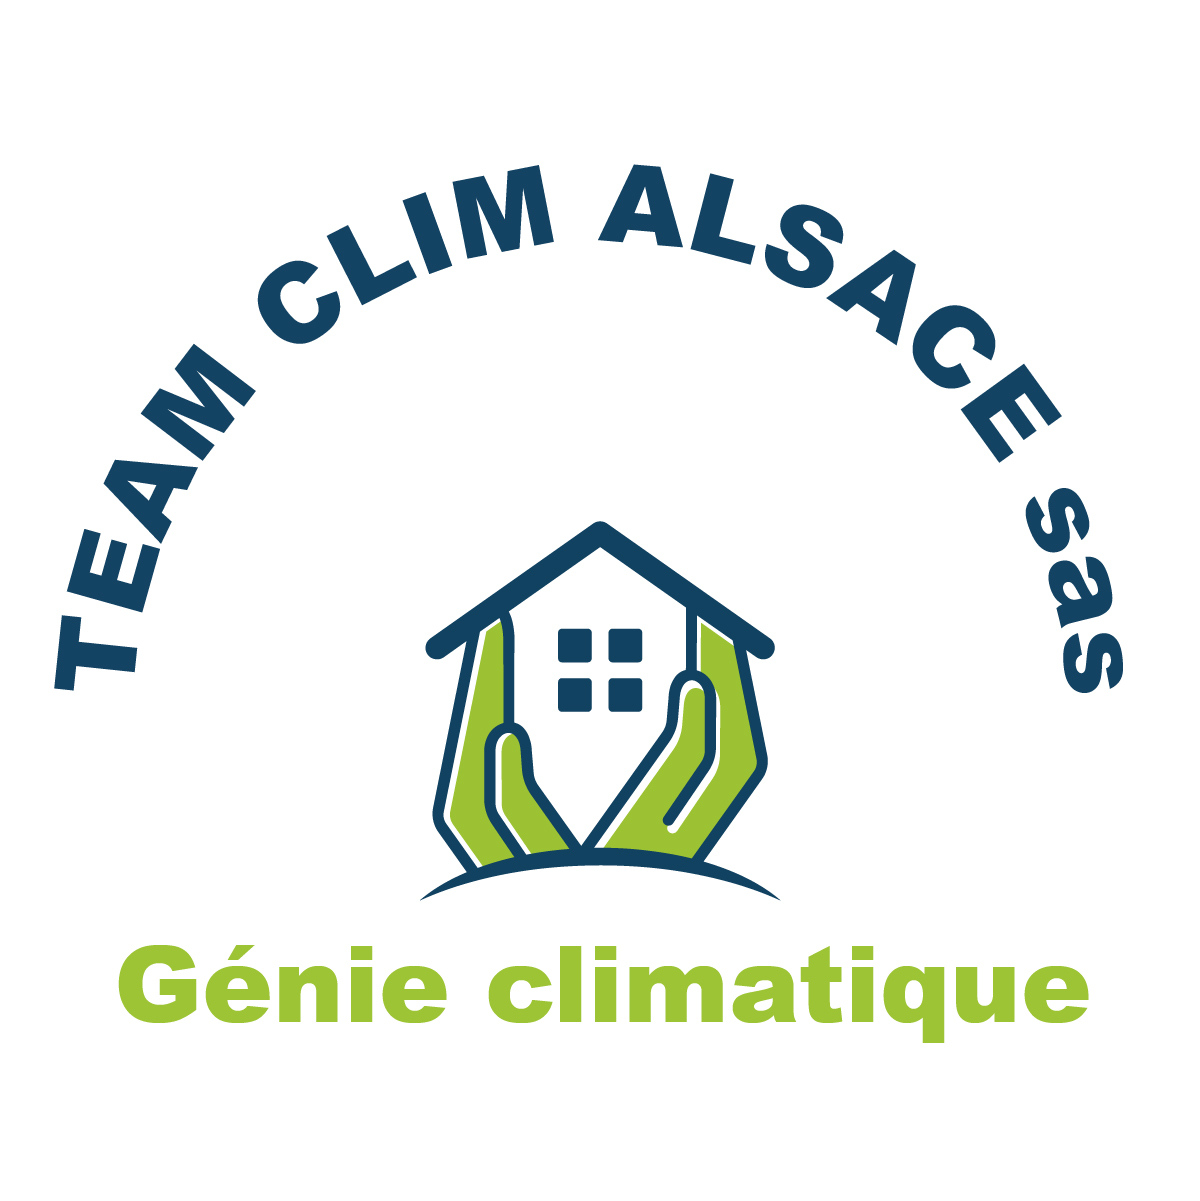 (c) Team-clim-alsace.com